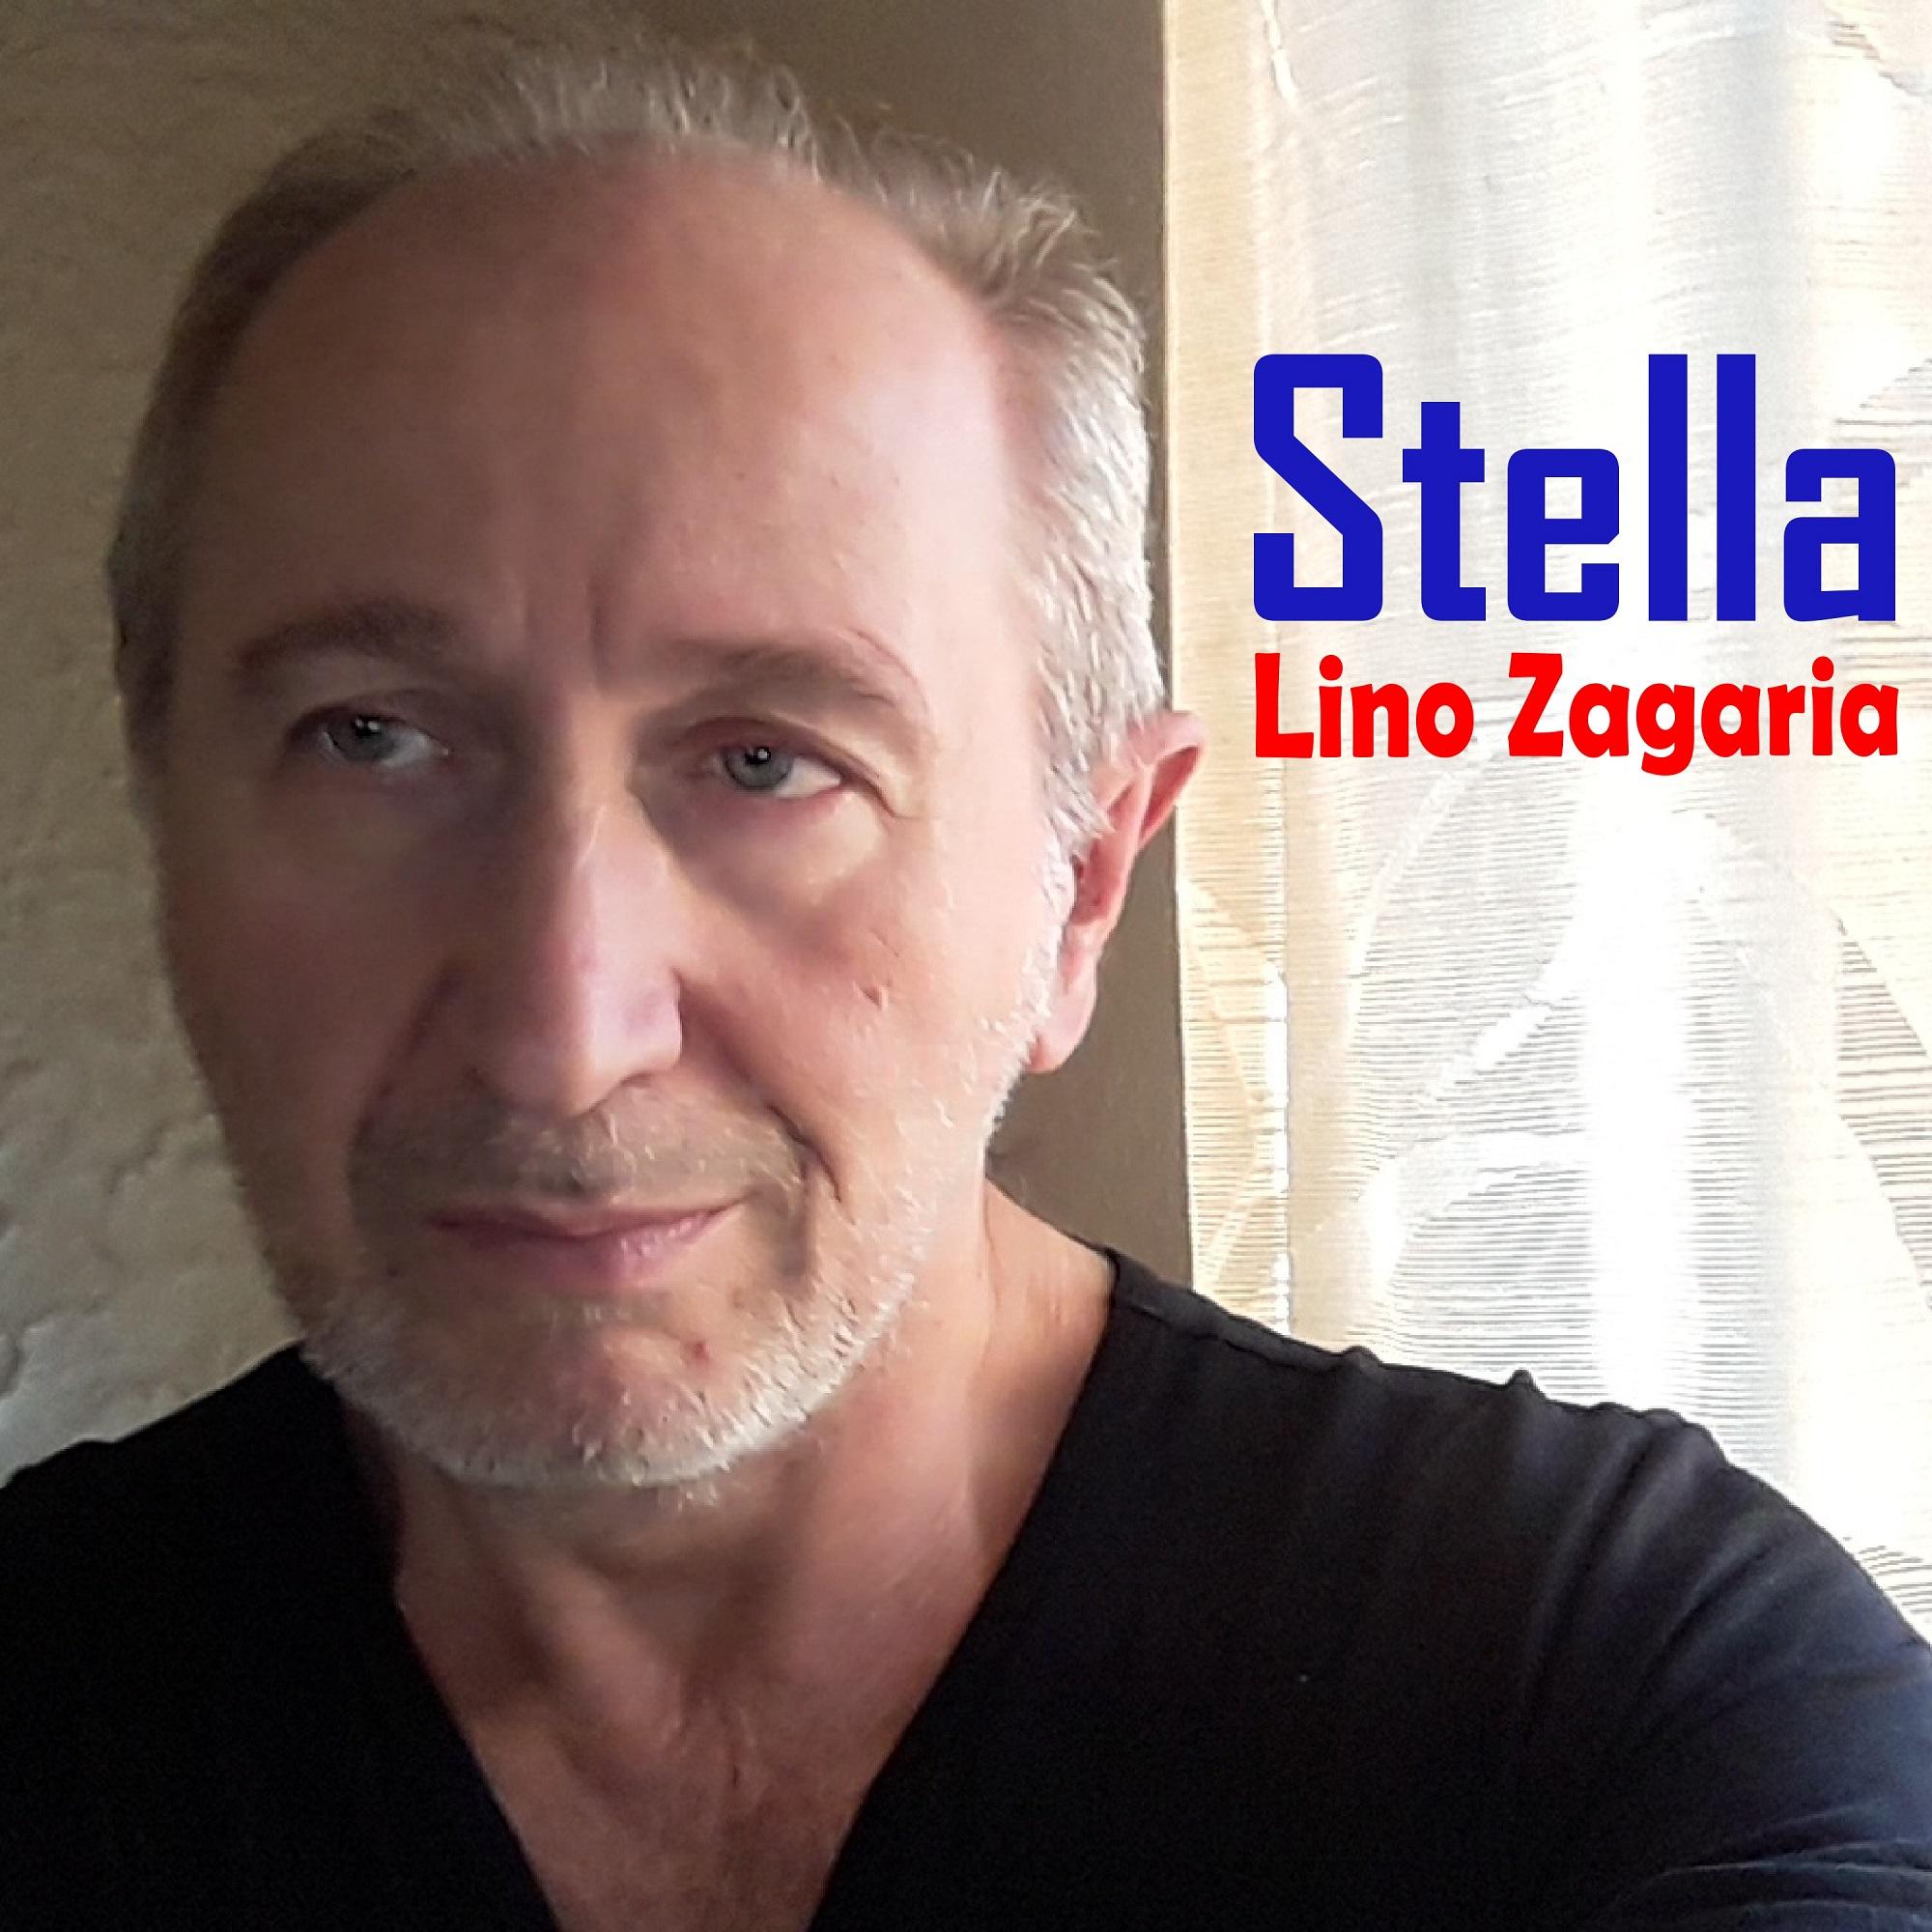 Stella - Lino Zagaria